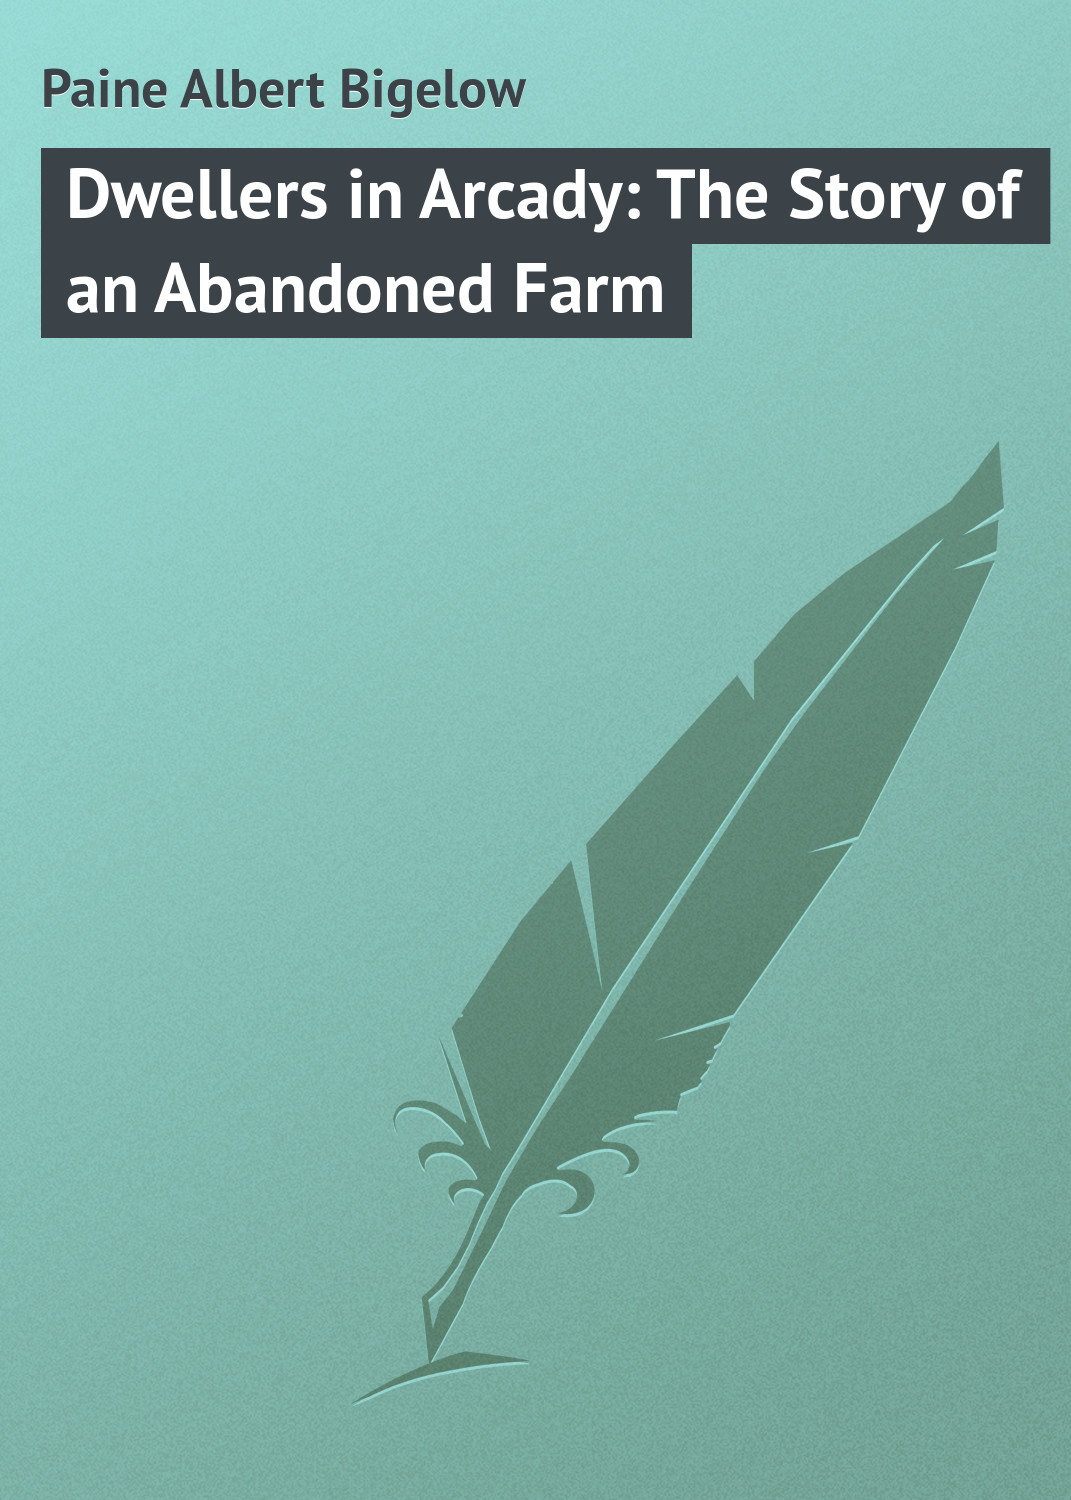 Книга Dwellers in Arcady: The Story of an Abandoned Farm из серии , созданная Albert Paine, может относится к жанру Зарубежная классика. Стоимость электронной книги Dwellers in Arcady: The Story of an Abandoned Farm с идентификатором 23148643 составляет 5.99 руб.